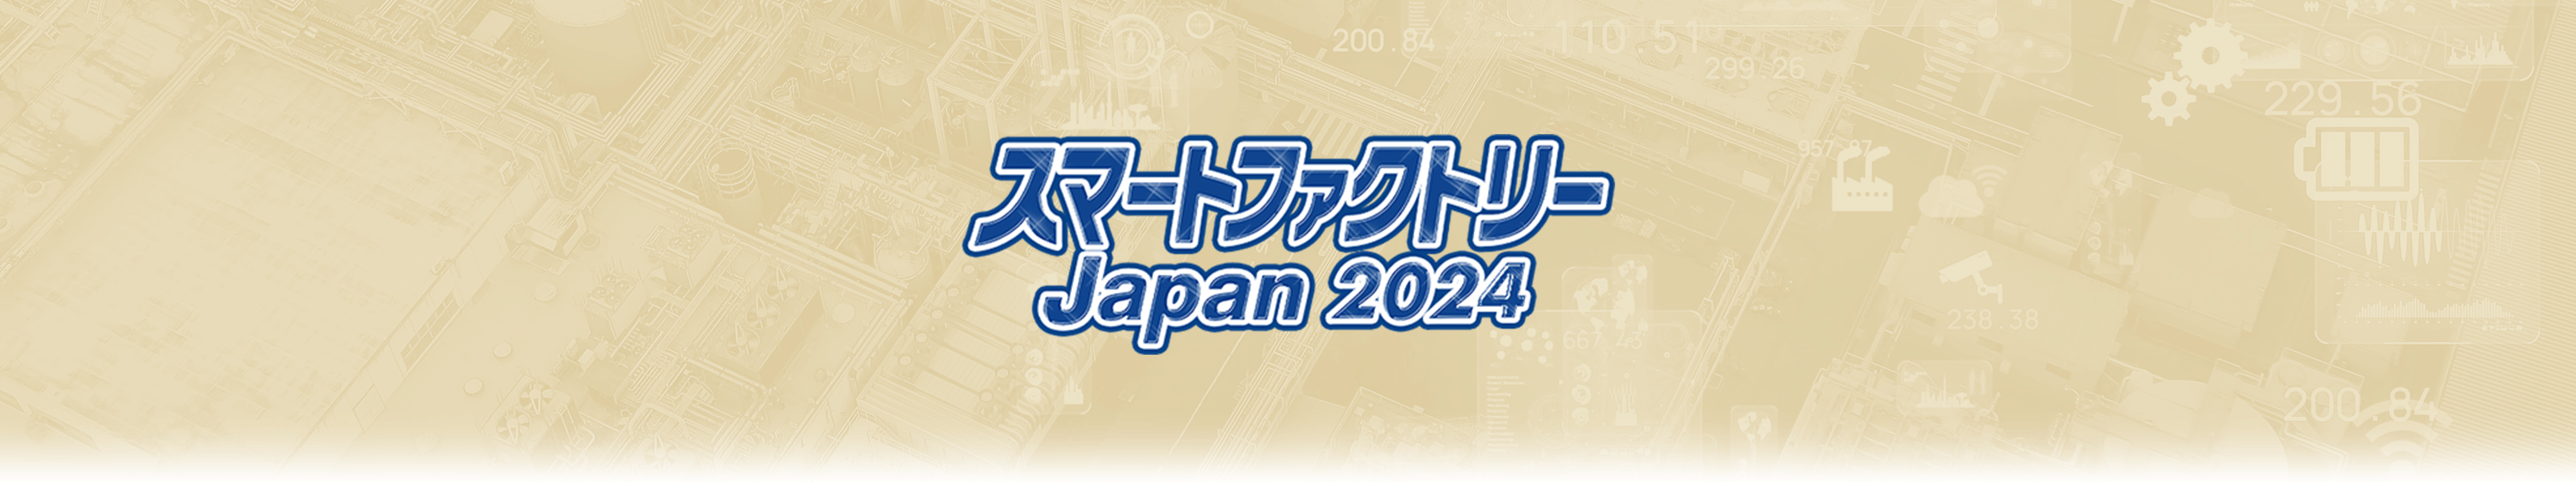 スマートファクトリー Japan 2024 出展案内